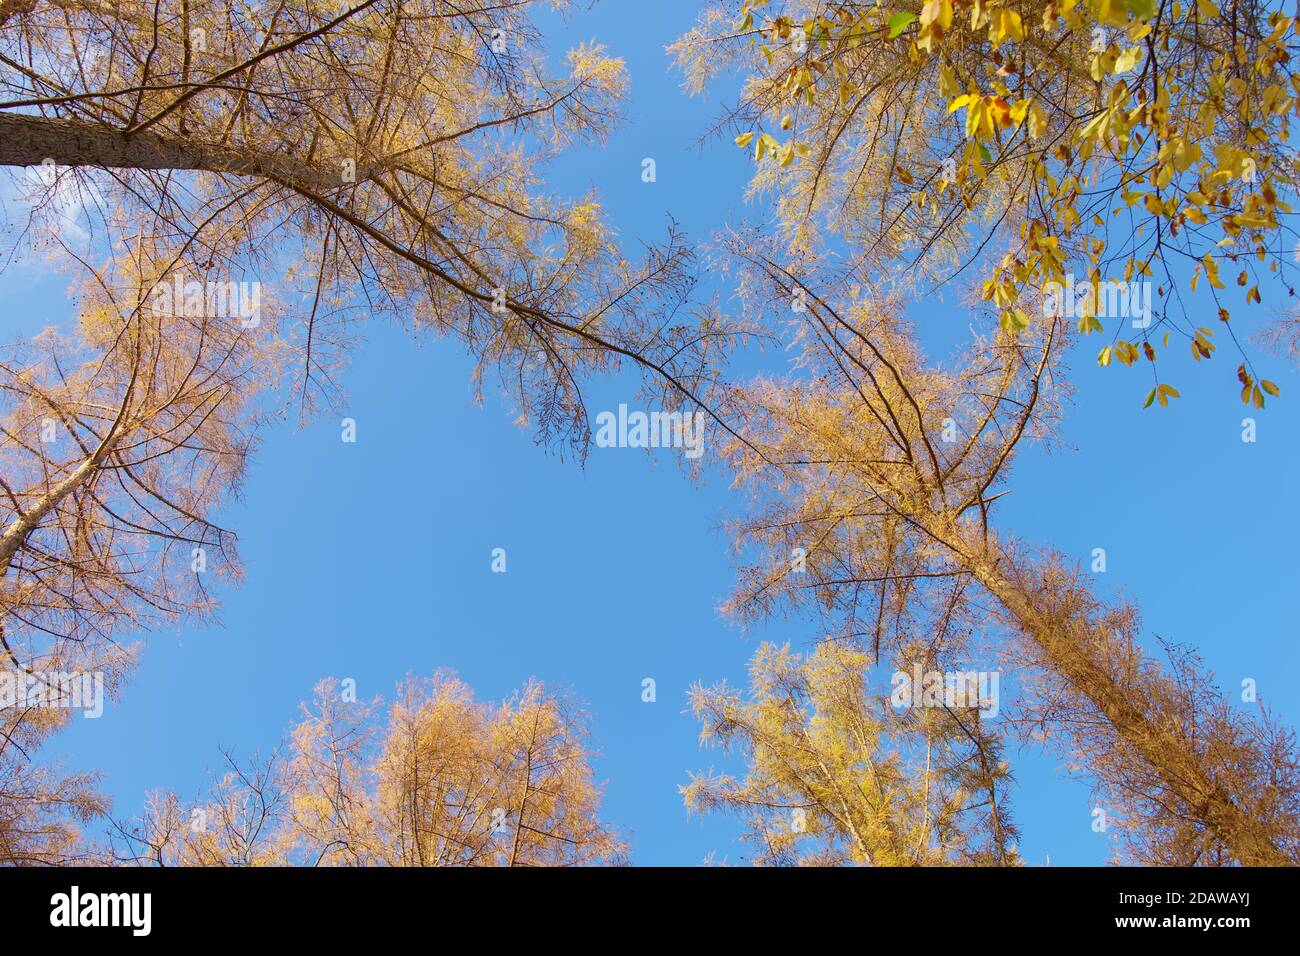 Guardando in alto gli alberi alti dal basso, siluetted contro il cielo. Composizione orizzontale, cornice completa, spazio di copia. Foto Stock